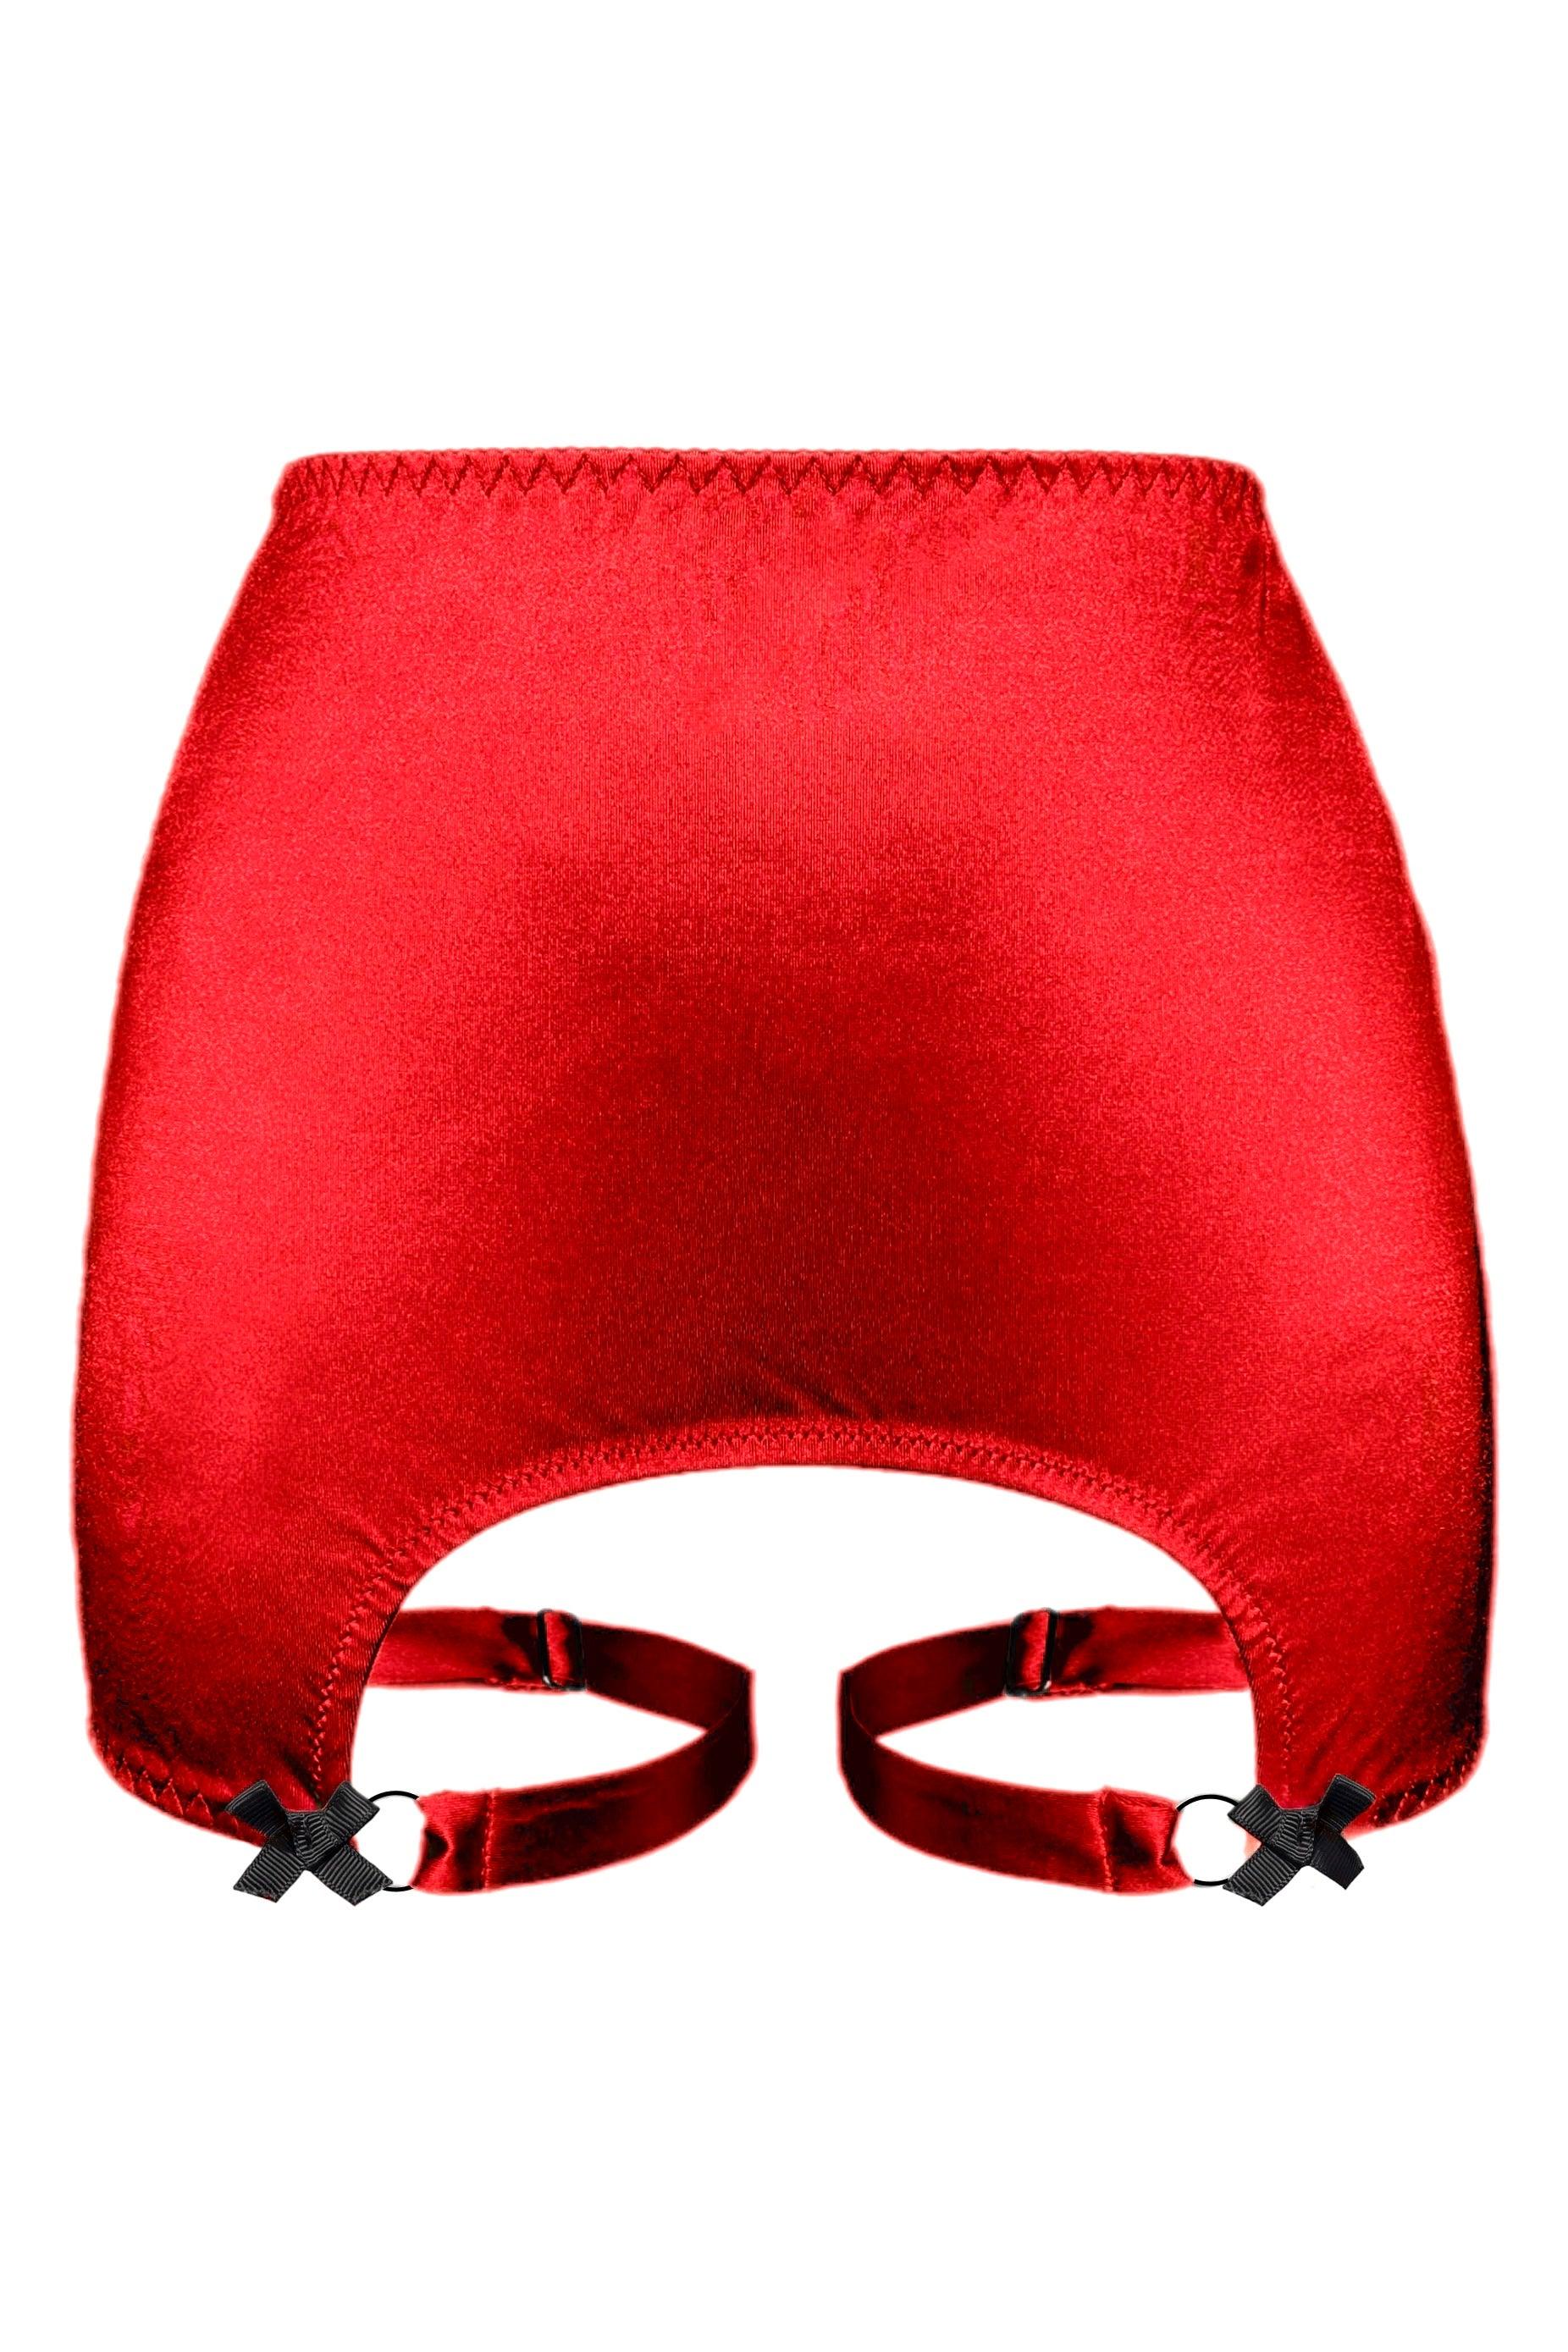 Joli Gloss red-black none-garter belt - yesUndress